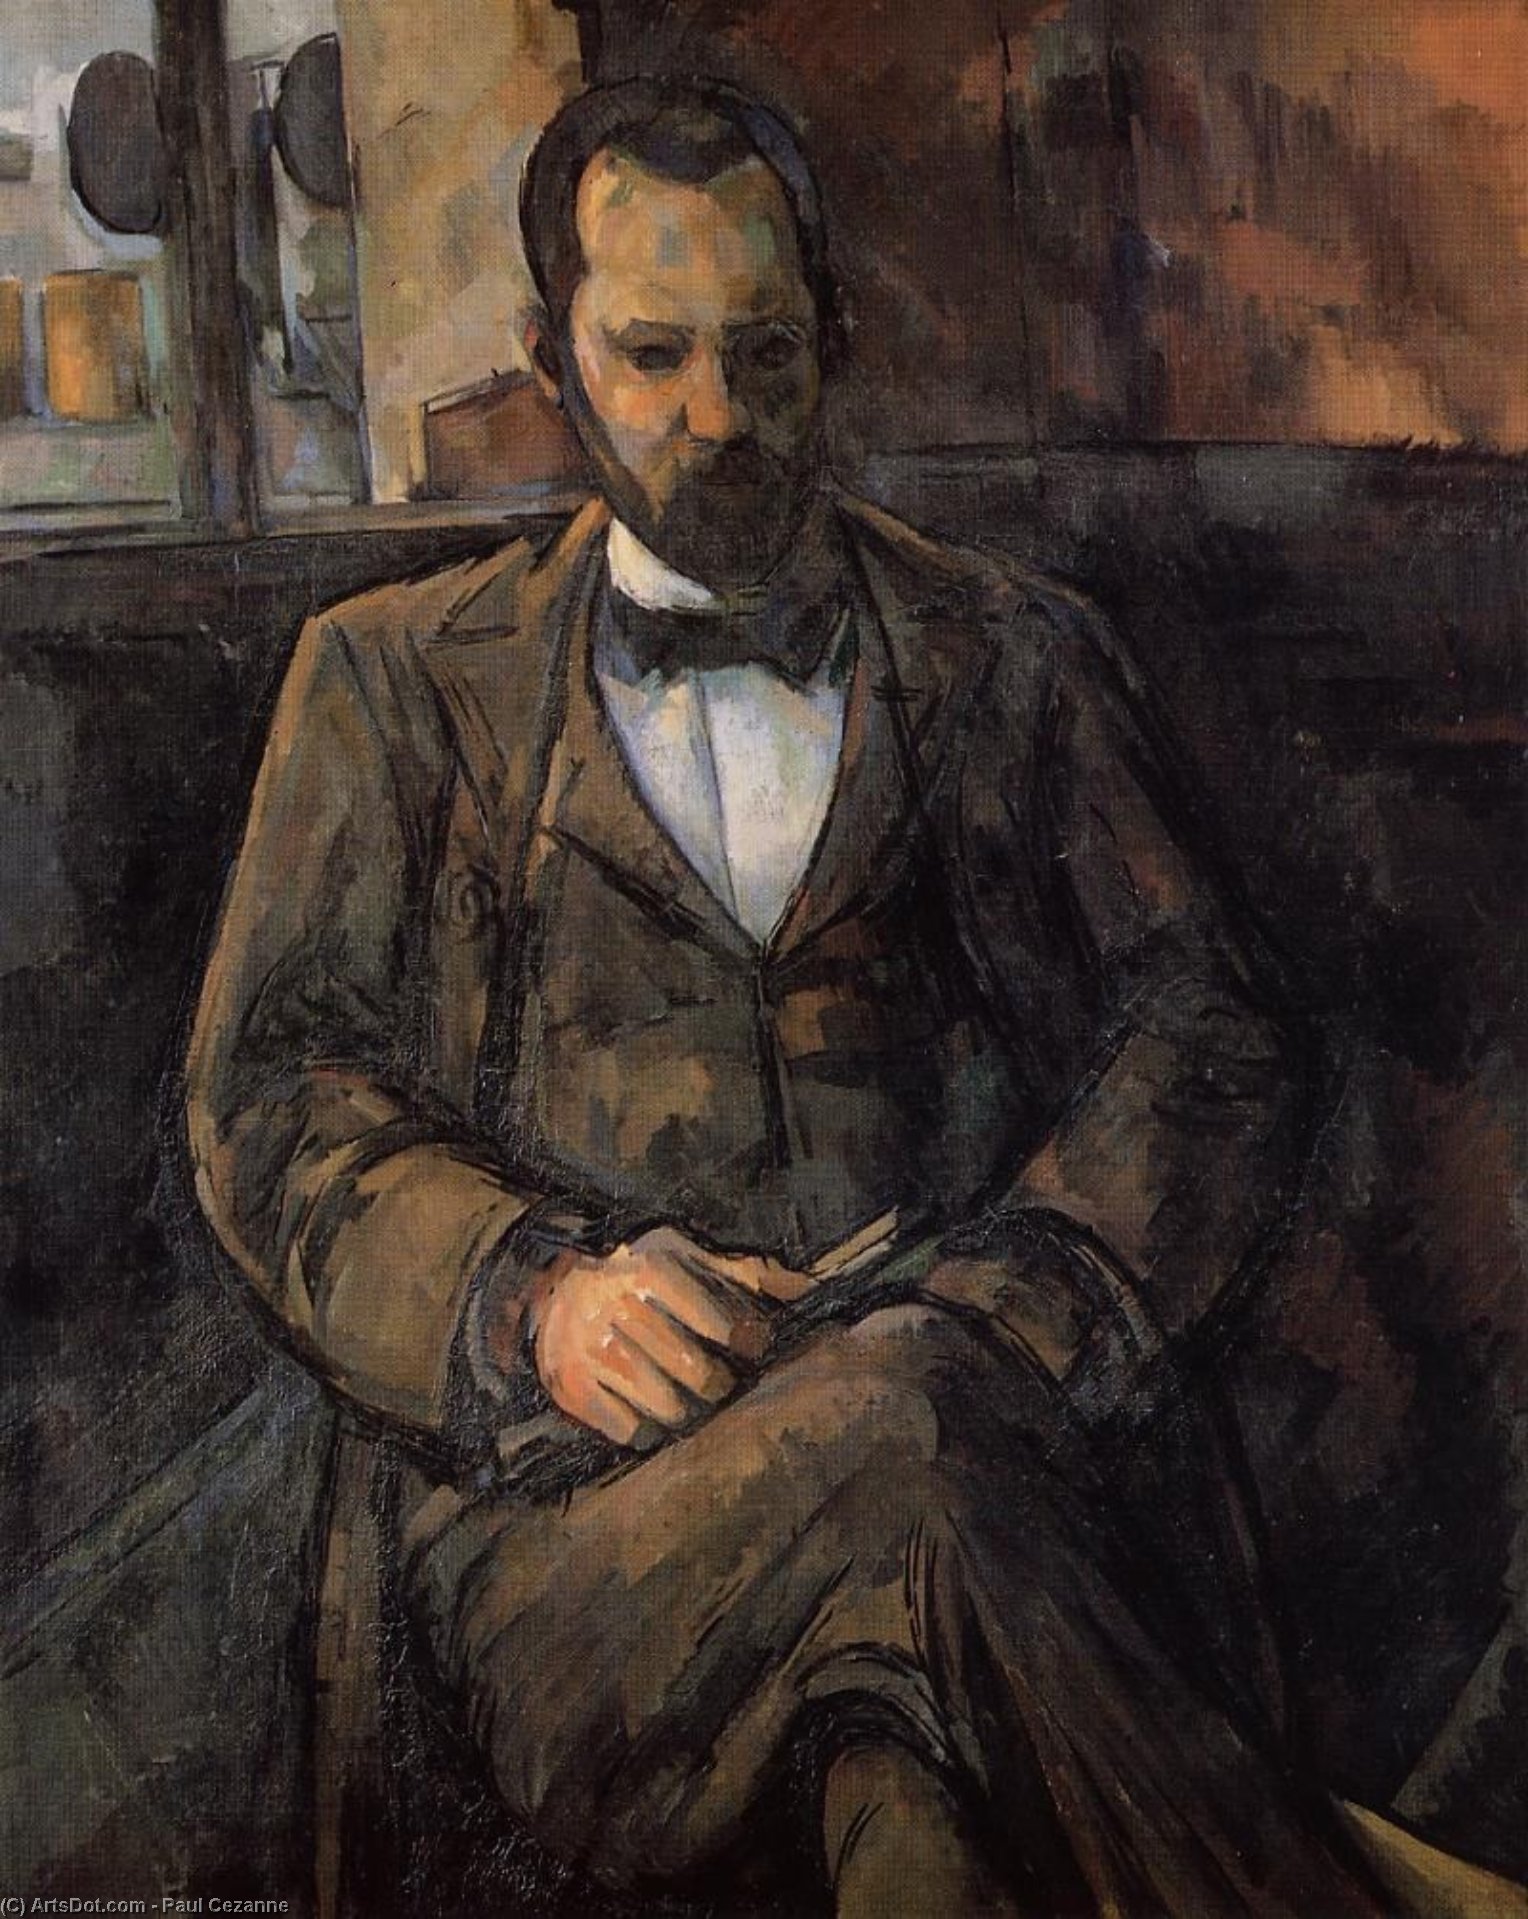 WikiOO.org - Encyclopedia of Fine Arts - Lukisan, Artwork Paul Cezanne - Portrait of Ambroise Vollard